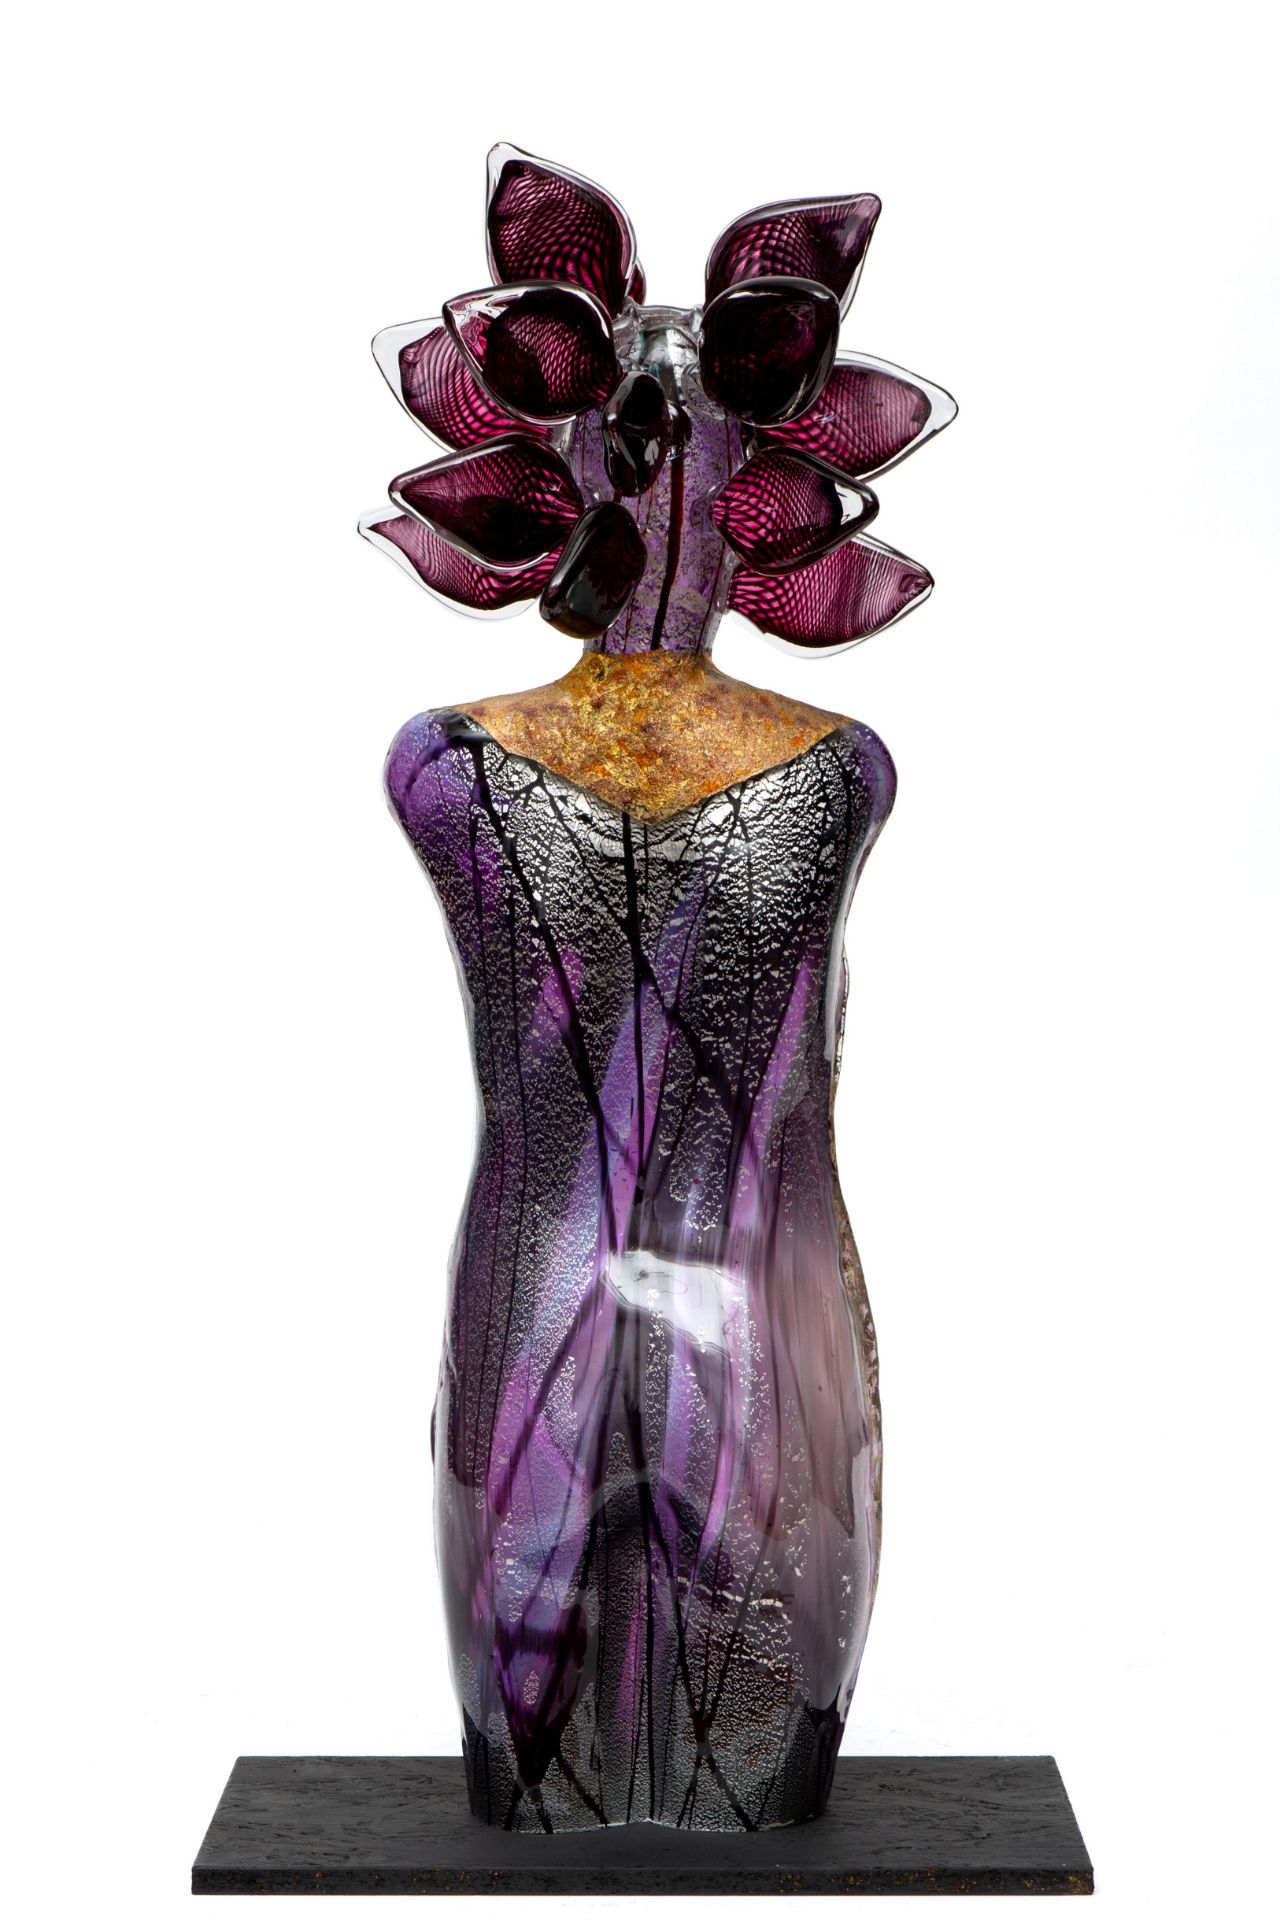 Richard Price (1960), paars glazen sculptuur van vrouw met hoofdtooi. - Image 4 of 4